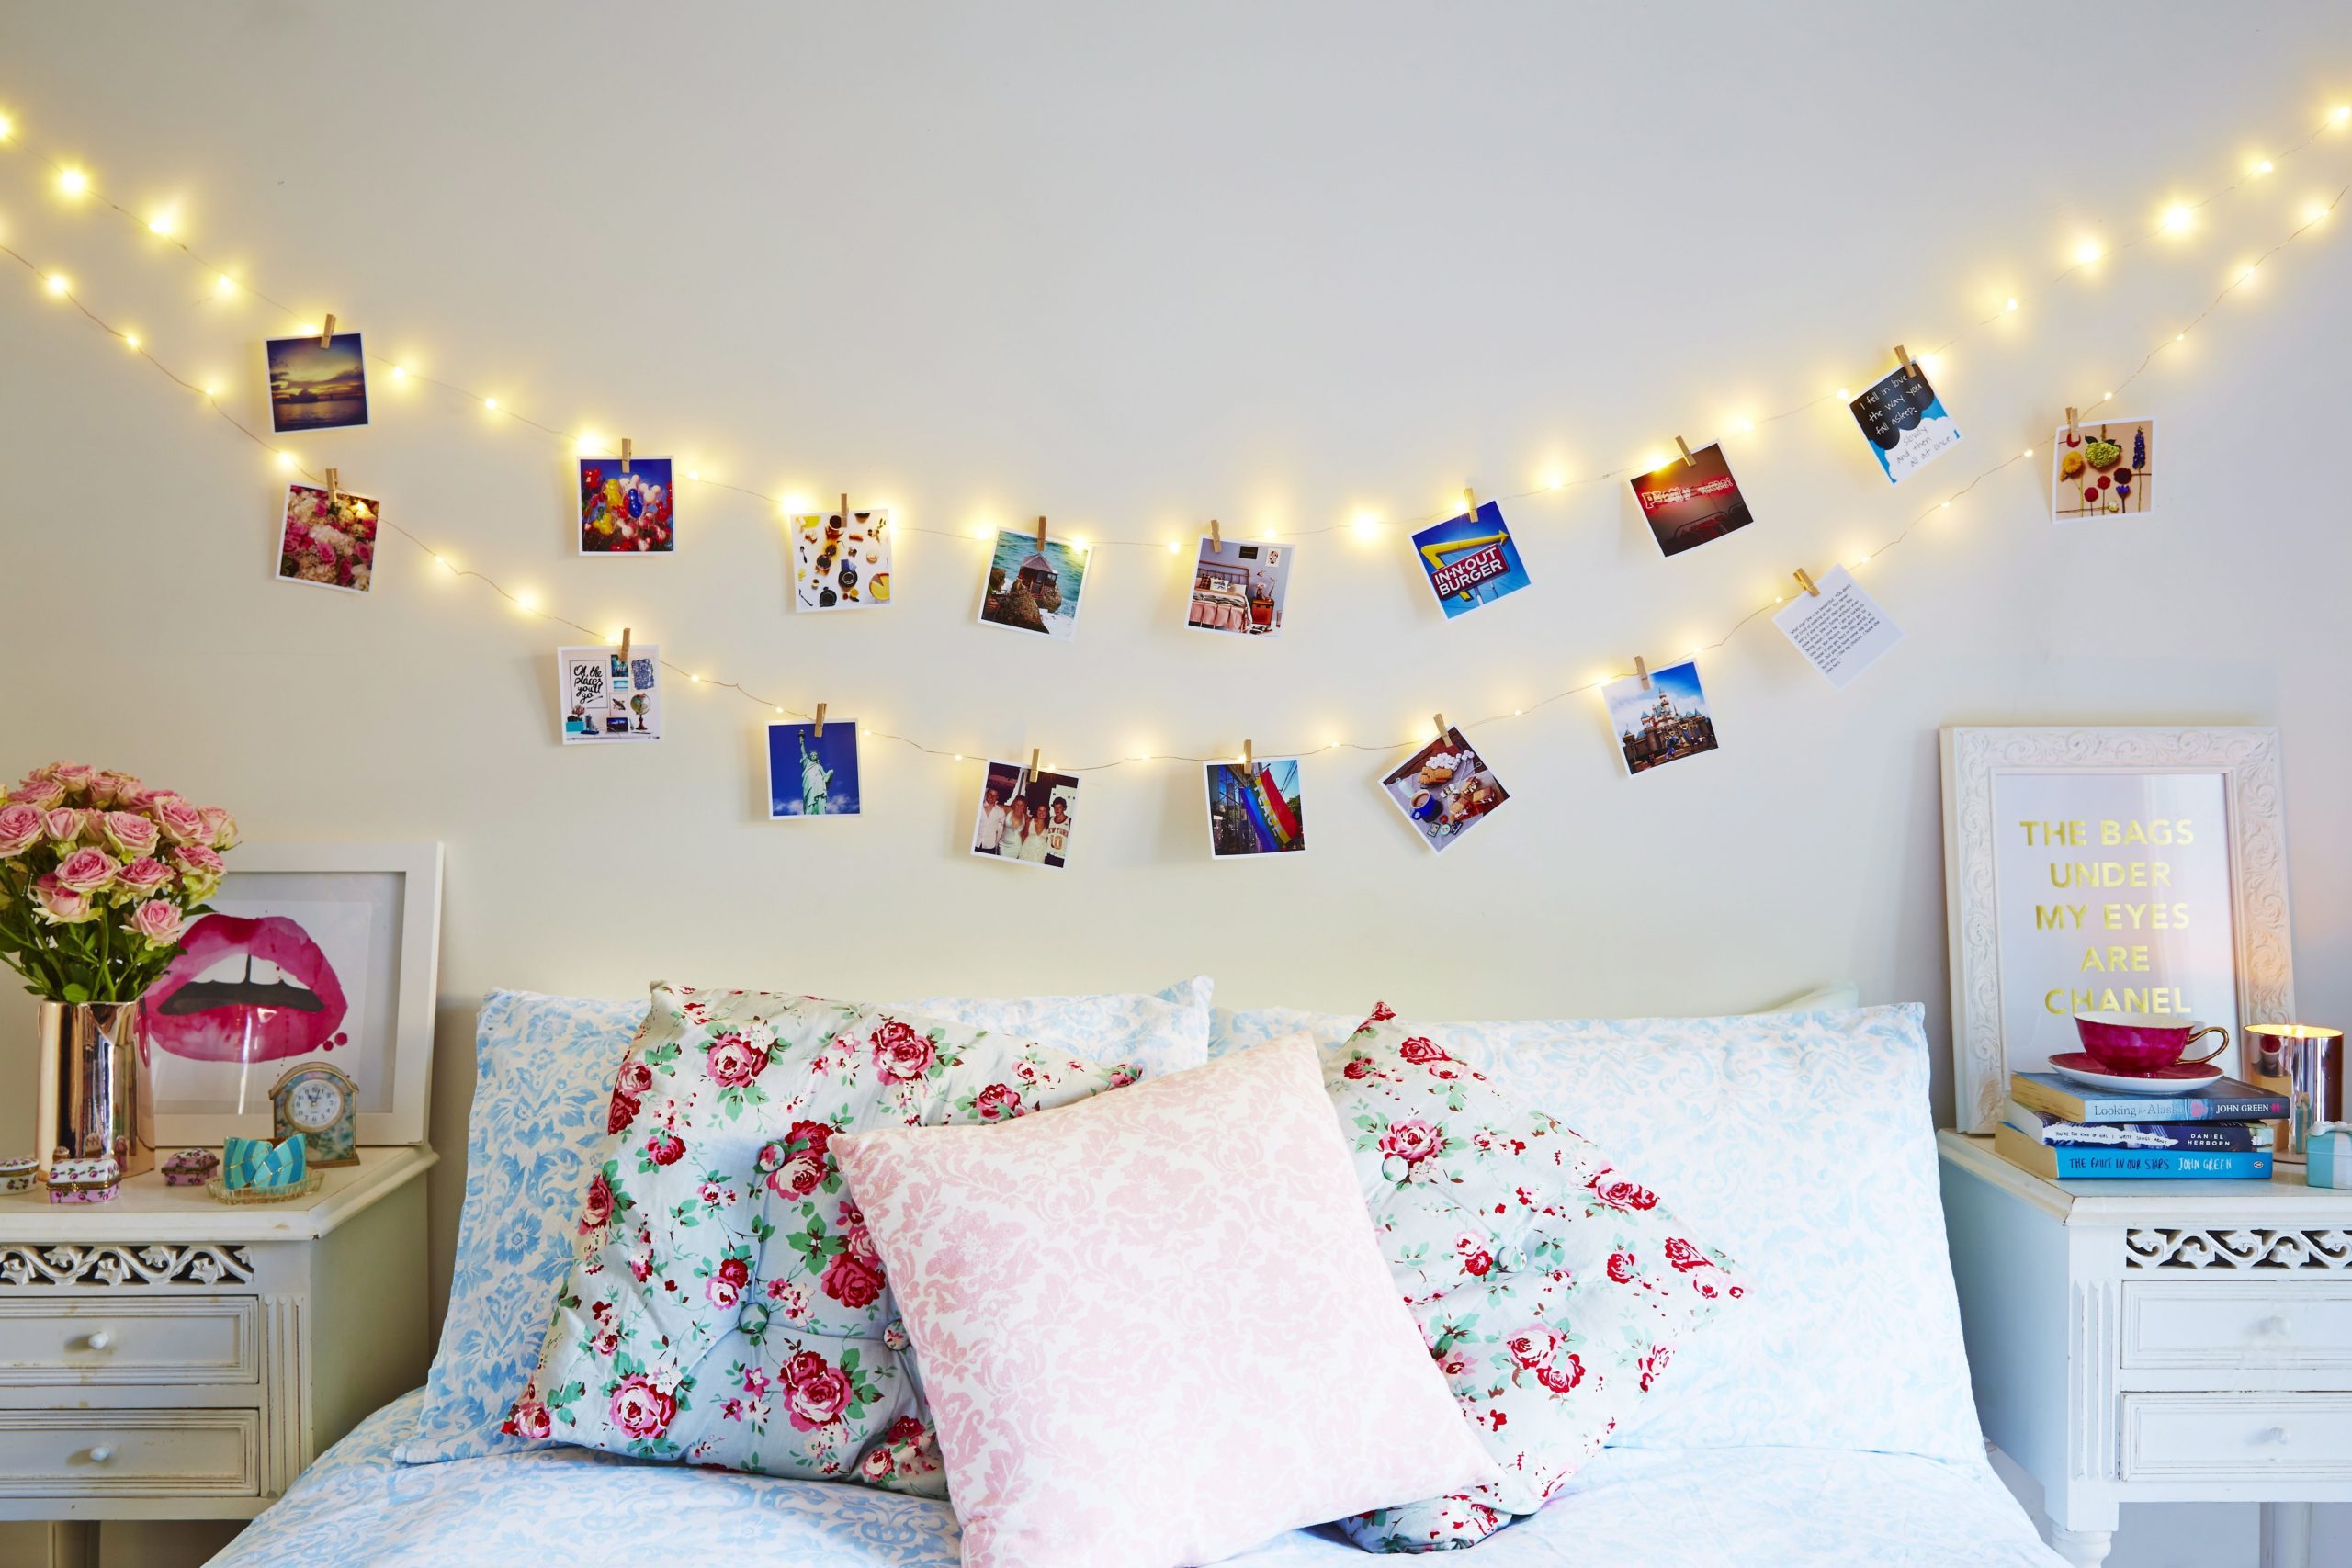 87 Gambar Dekorasi Kamar Tidur Sederhana Dengan Lampu Tumblr Terlengkap